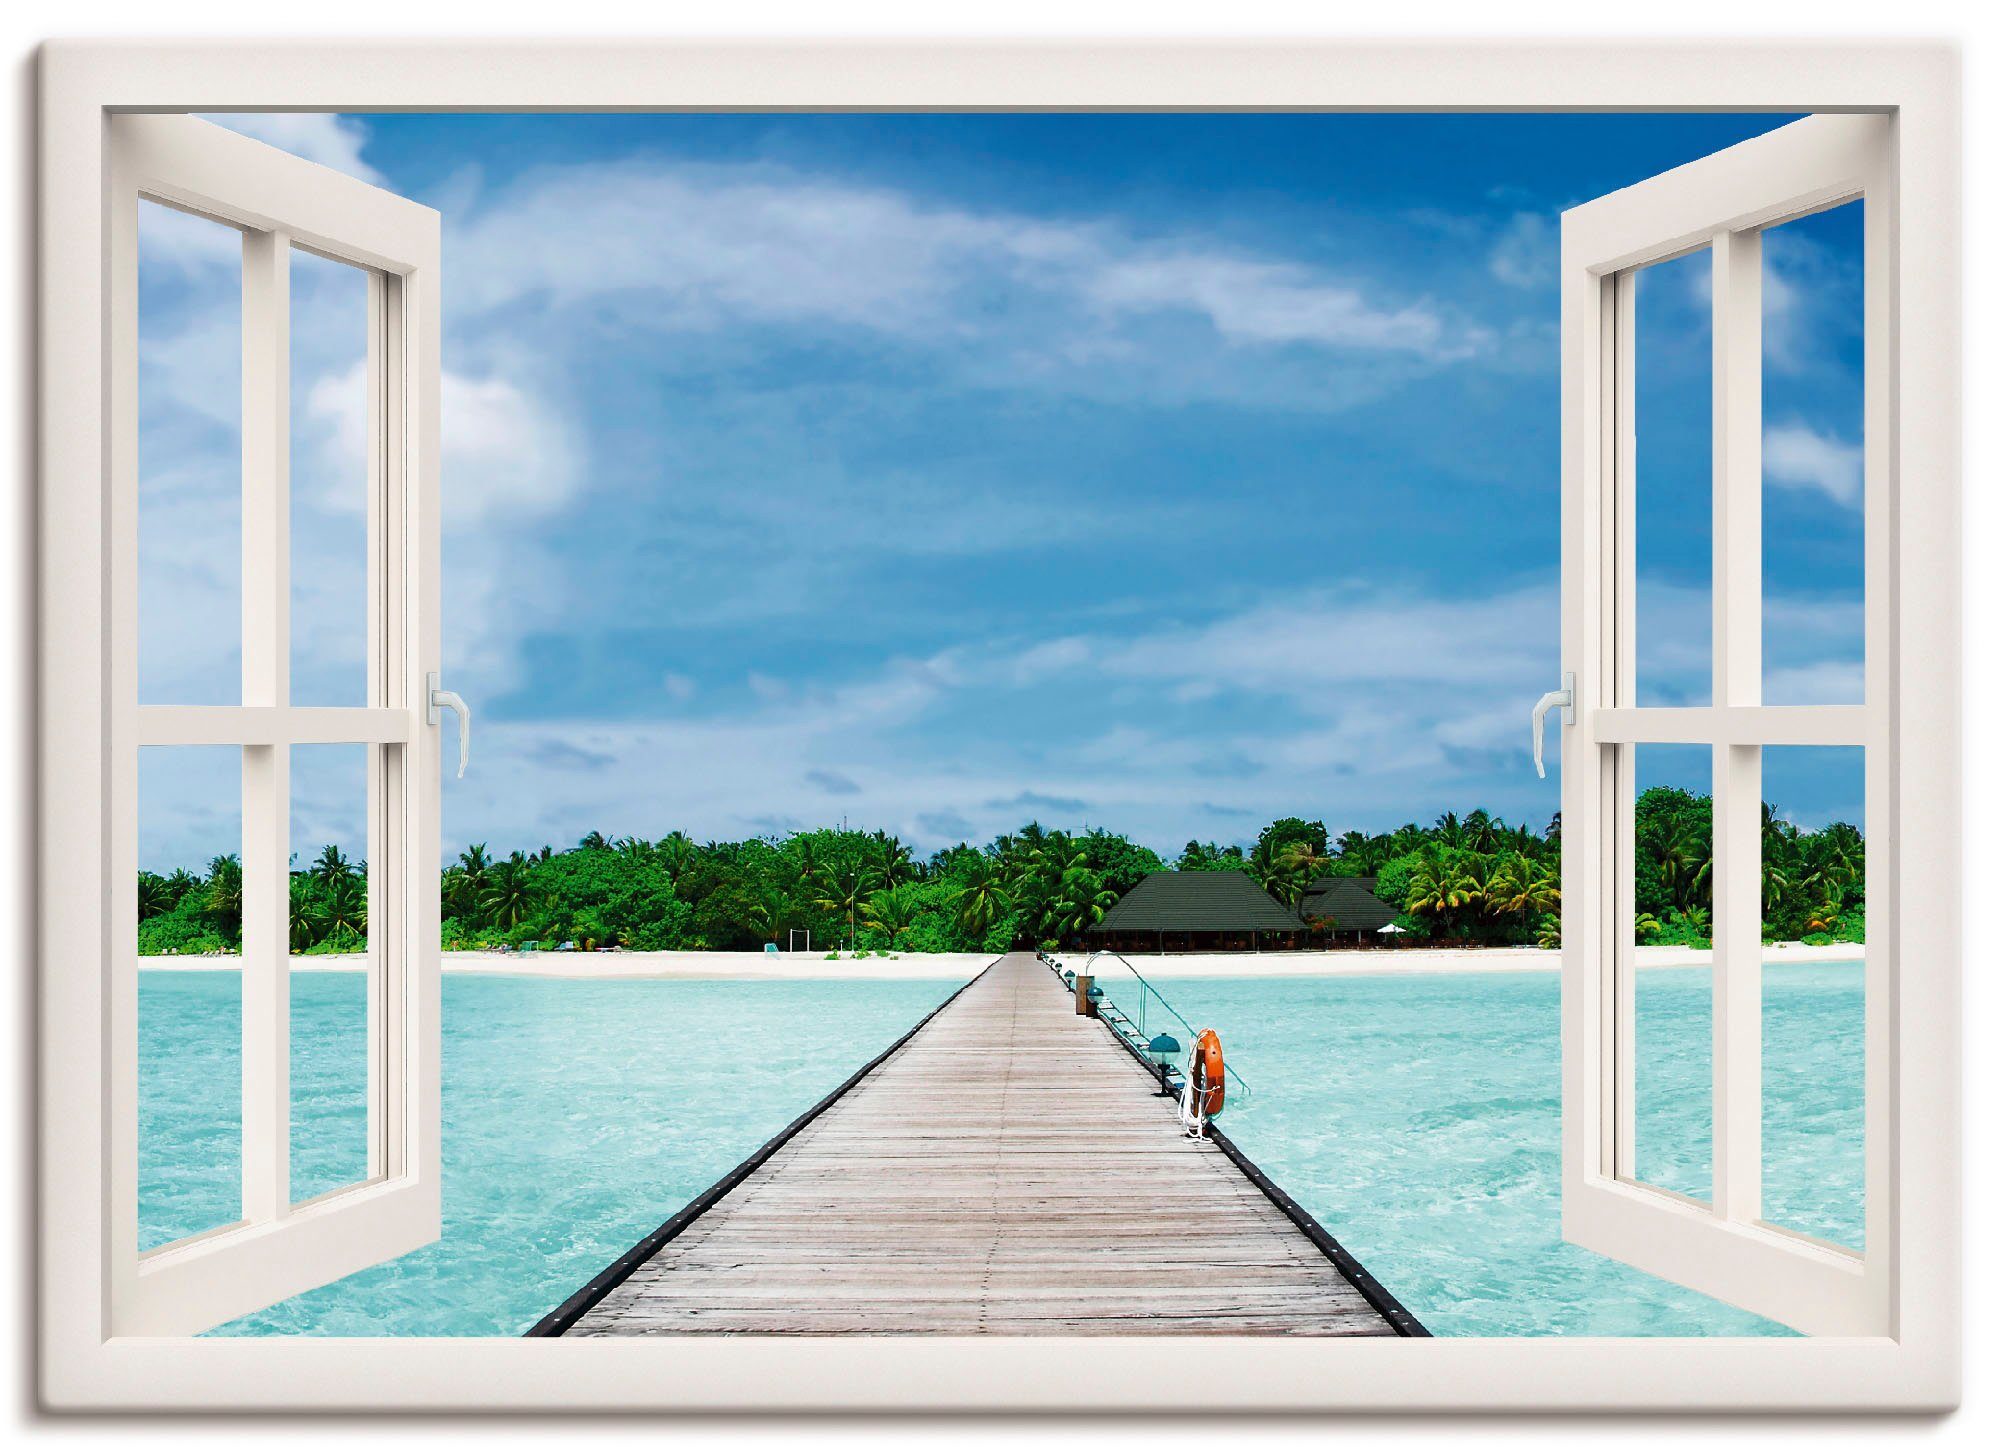 Artland Artprint Blik uit het venster Maldivisch paradijs in vele afmetingen & productsoorten -artprint op linnen, poster, muursticker / wandfolie ook geschikt voor de badkamer (1